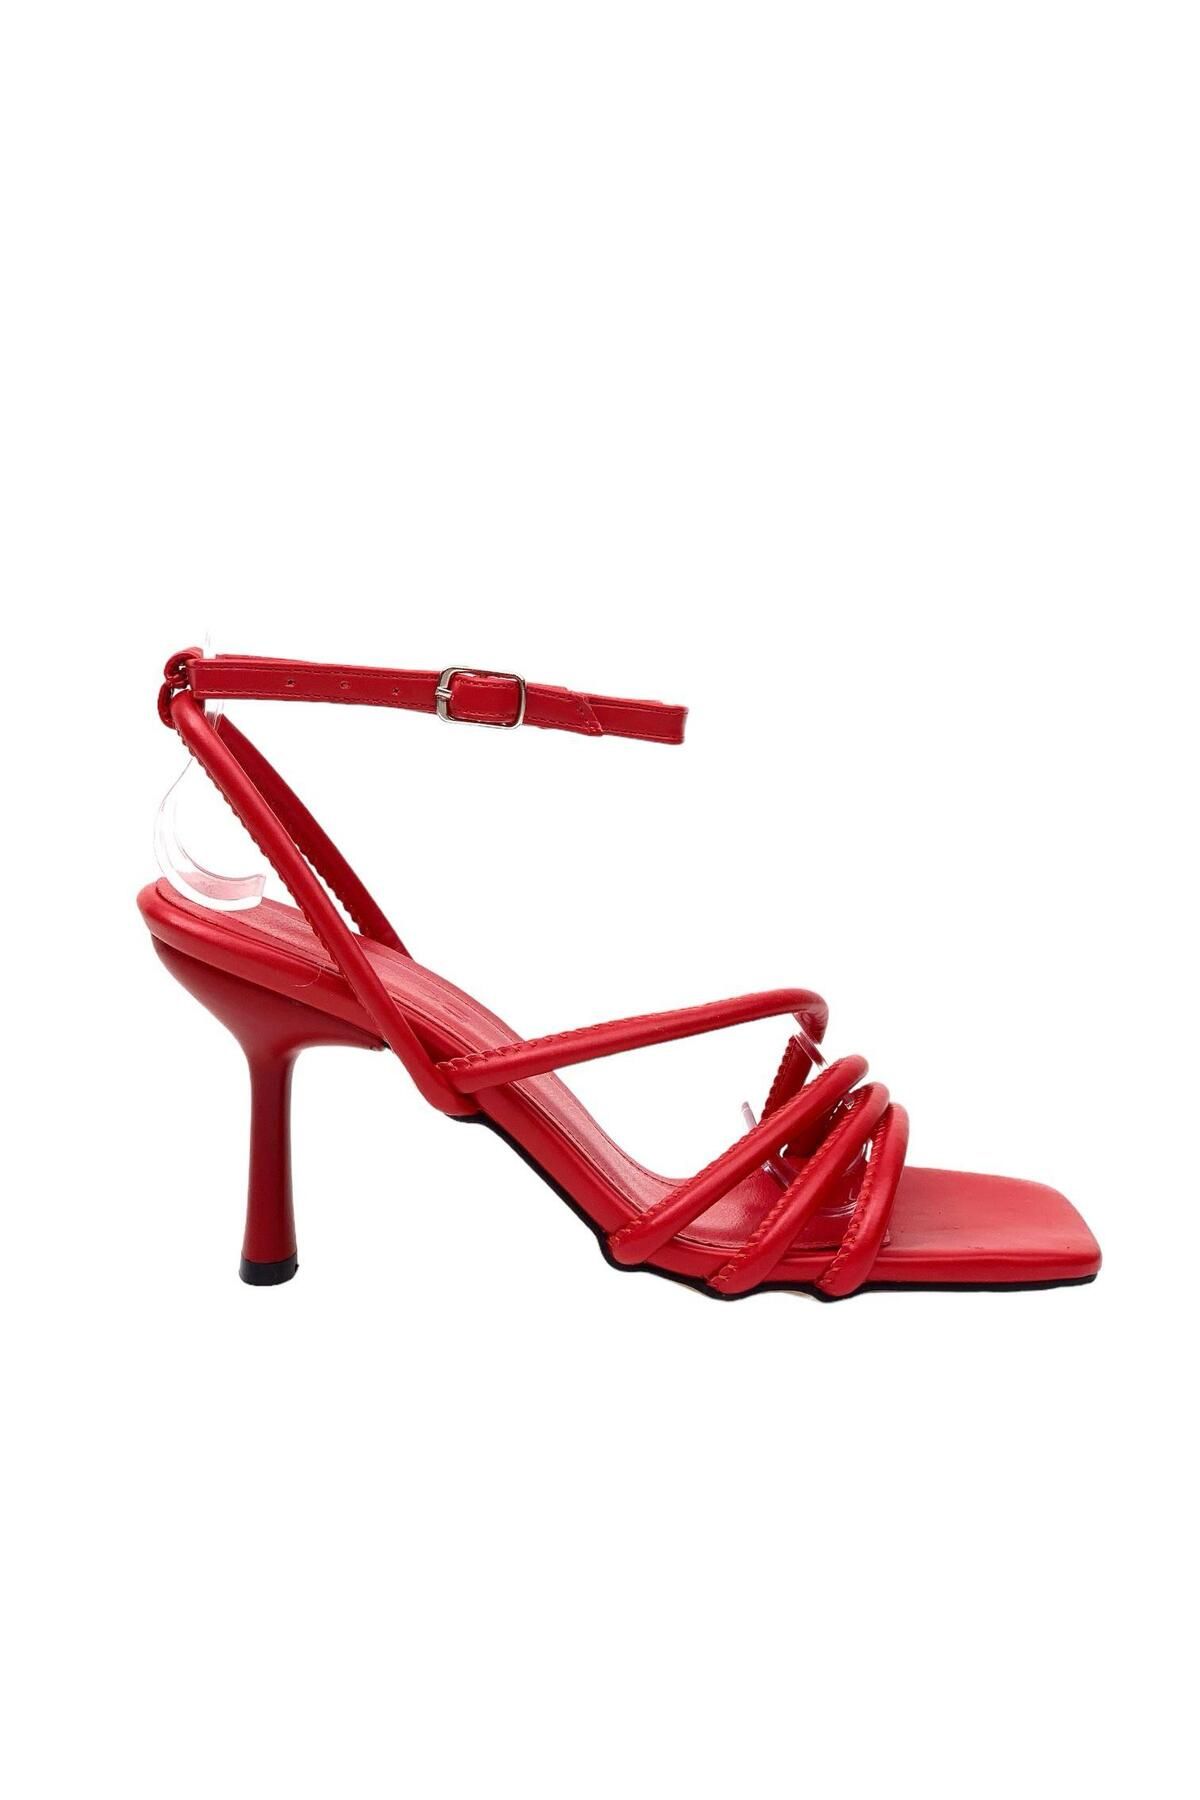 bescobel Kadın Pakja Kırmızı Biyeli bilekten Bağlamalı Sandalet 7,5 Cm 9904